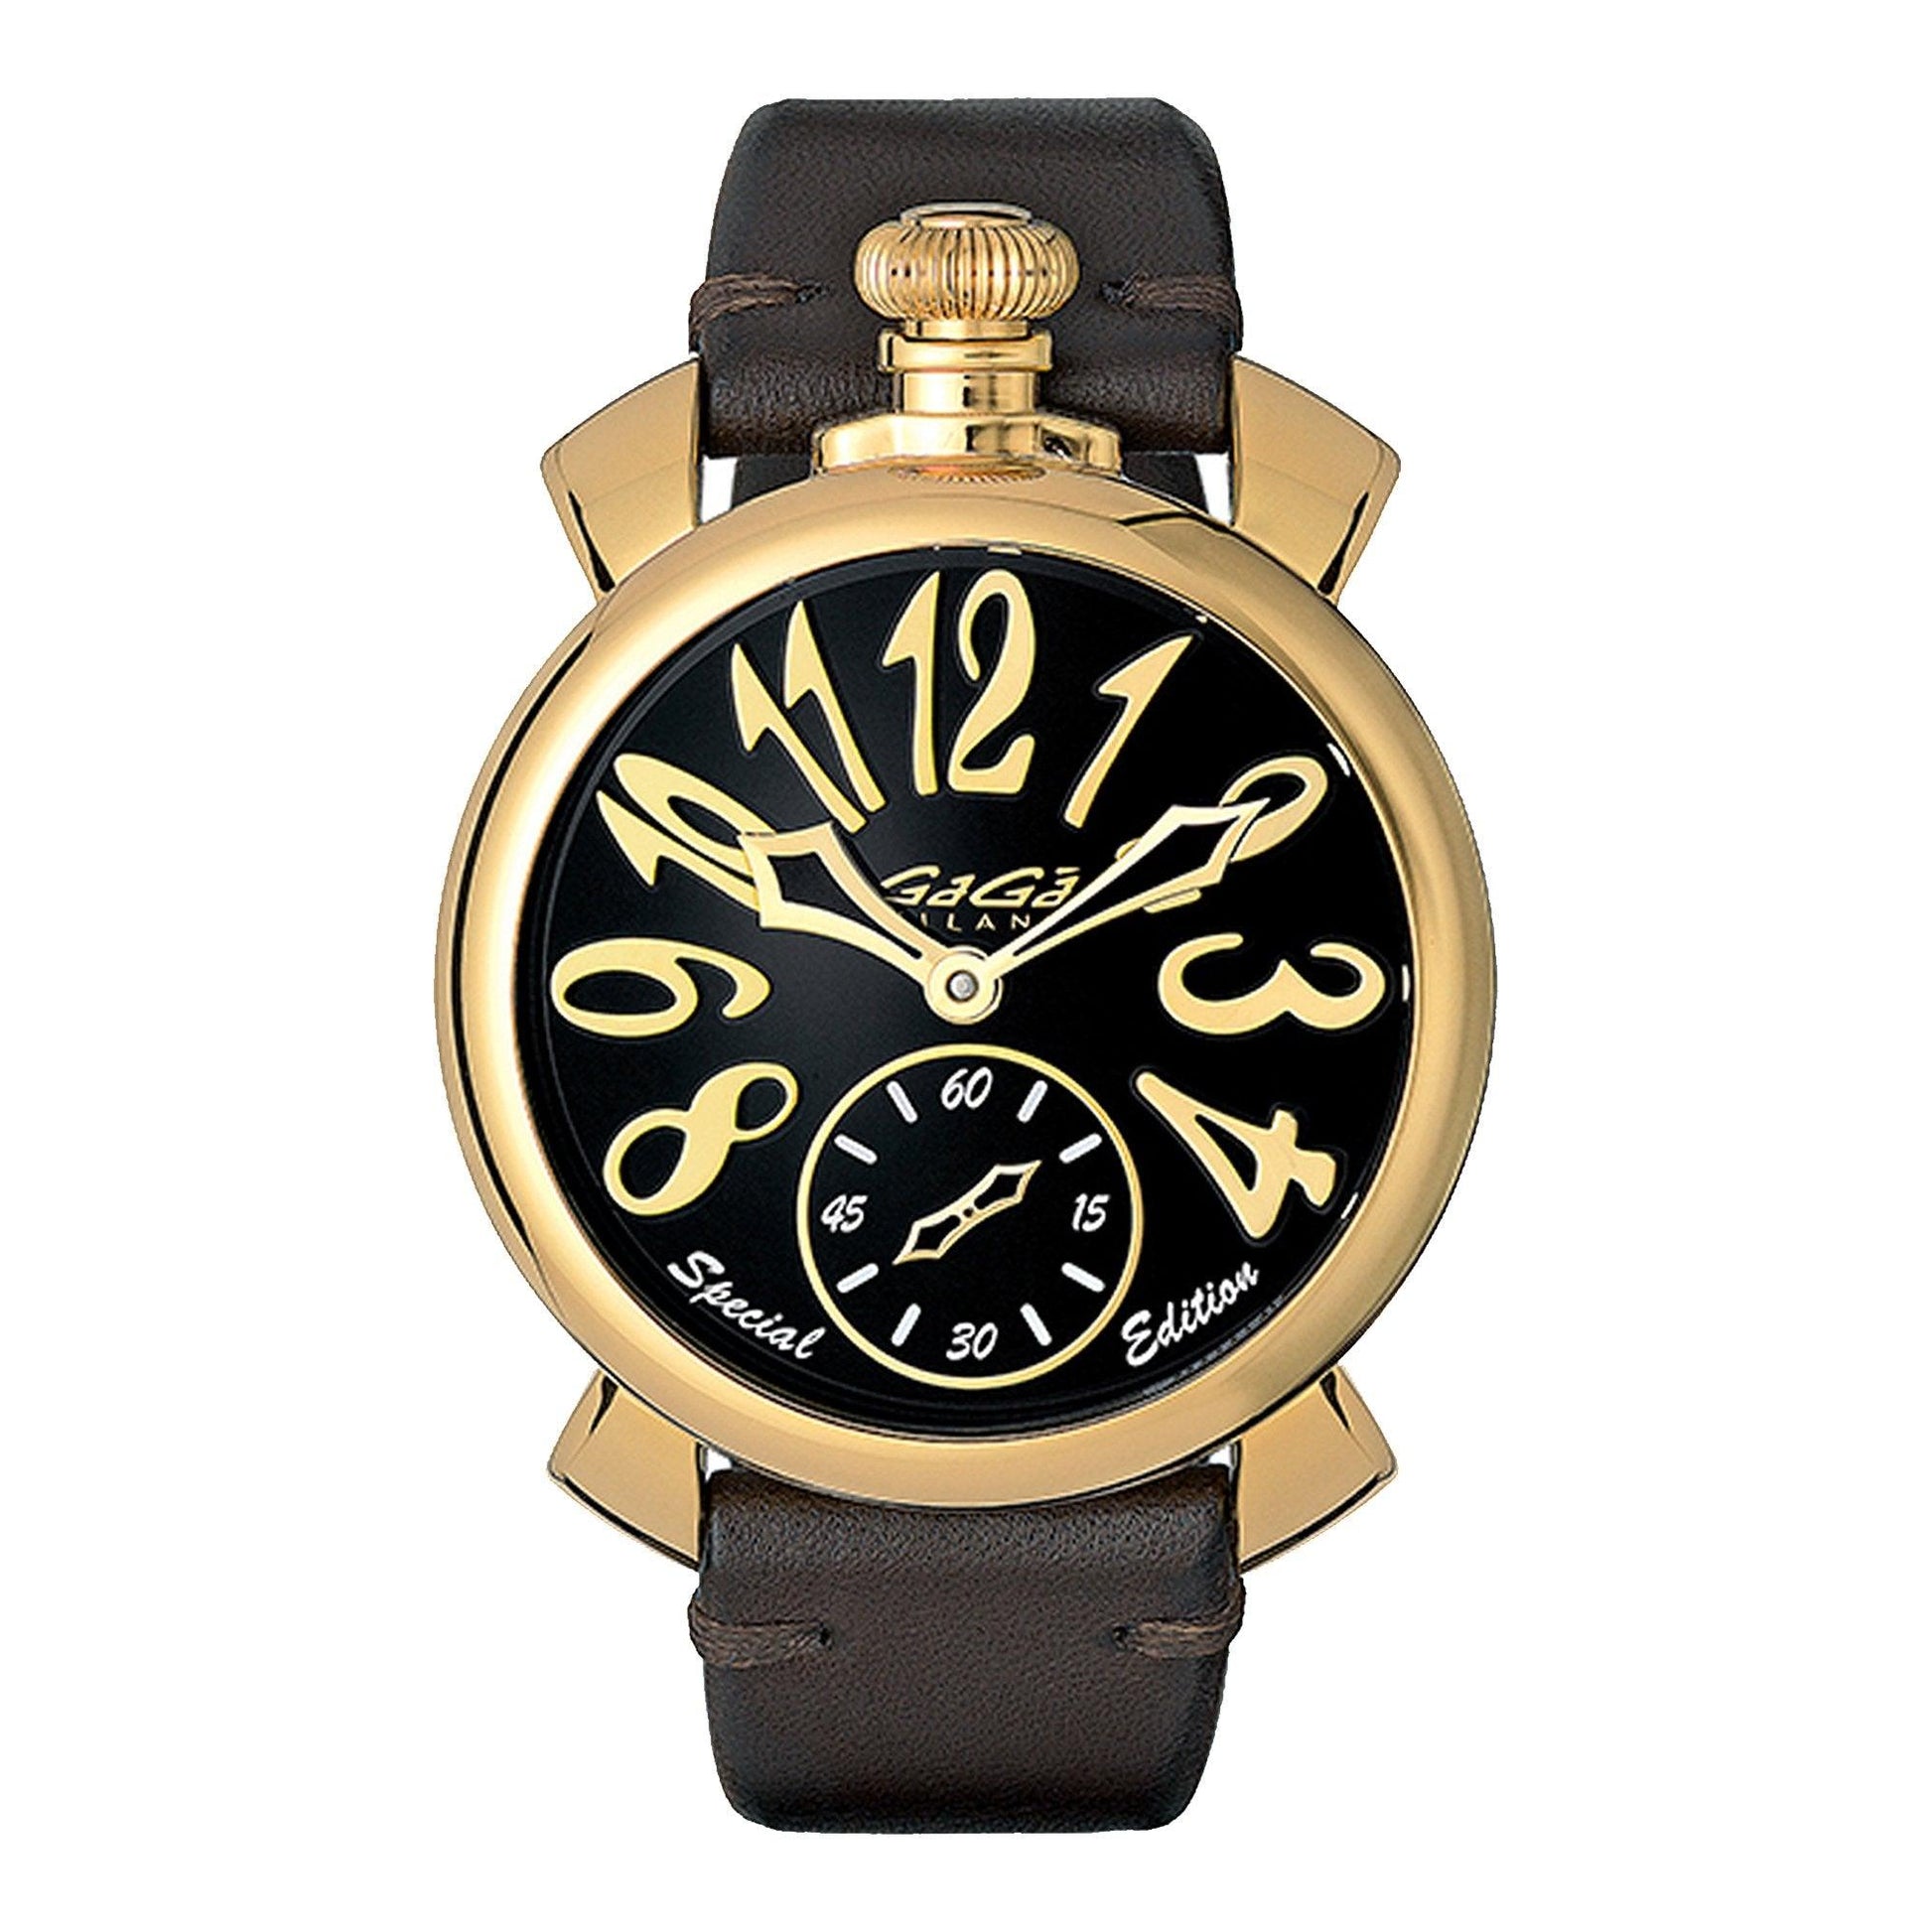 Gagà Milano Special Edition 5018SP01 orologio unisex meccanico - Kechiq Concept Boutique